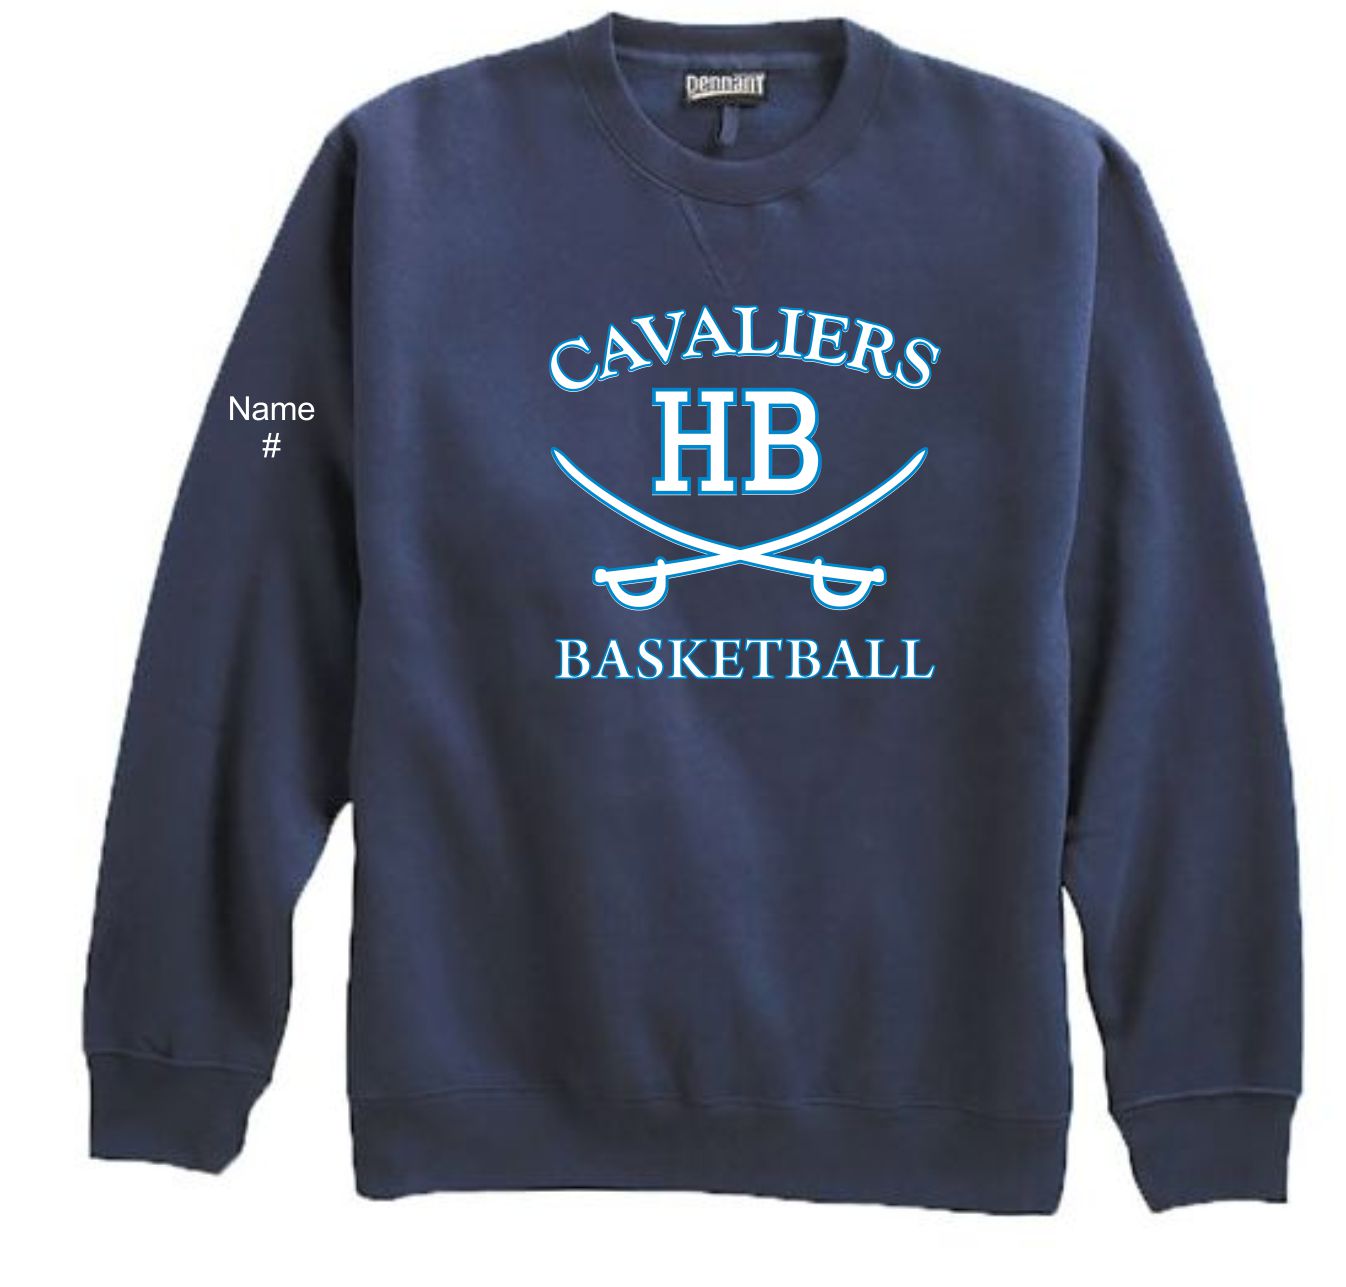 HB Basketball Crew Neck Sweatshirt 700